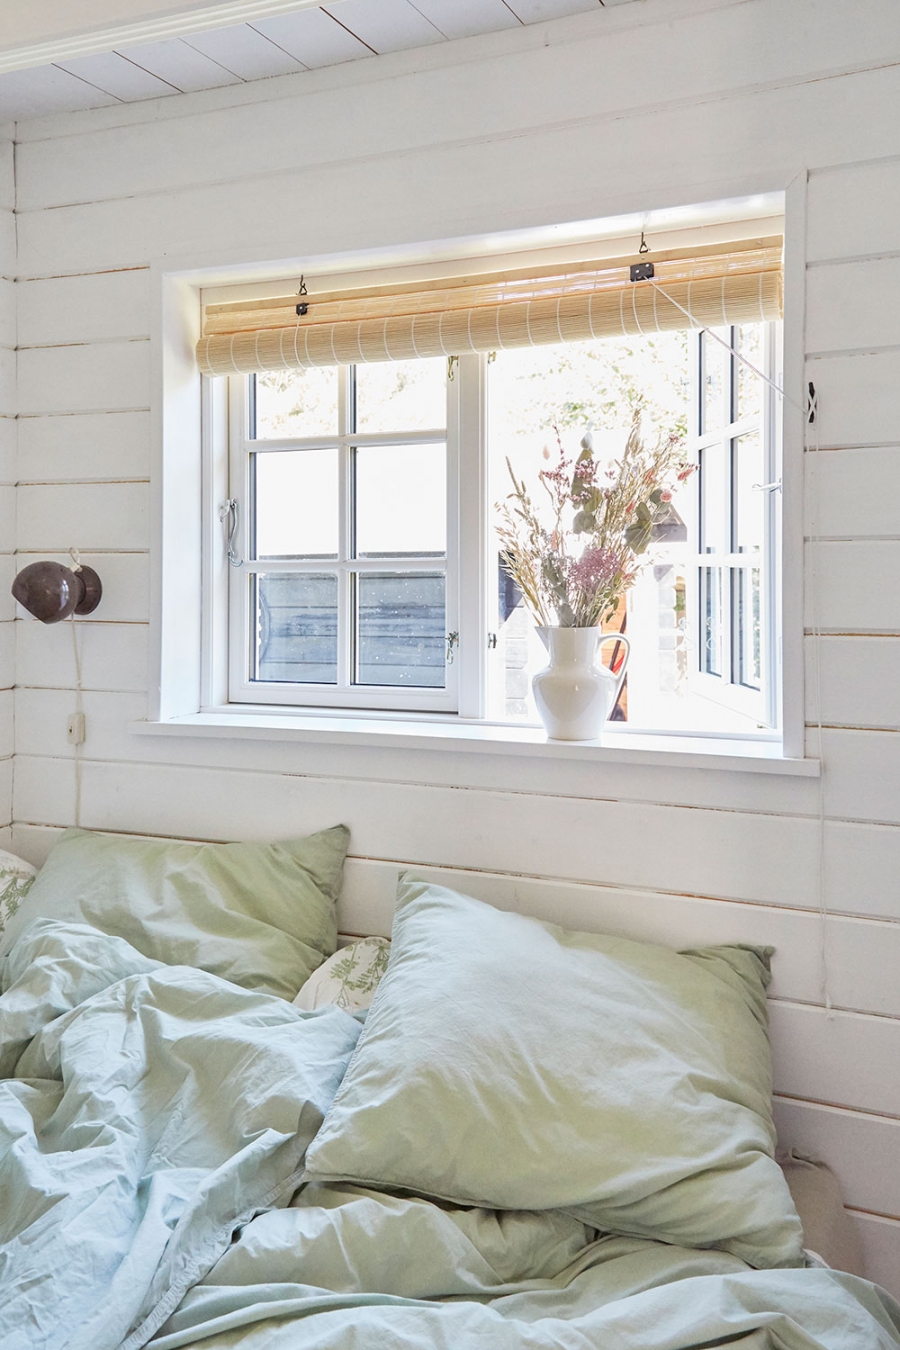 Phòng ngủ của bố mẹ với gam màu trắng chủ đạo kết hợp bộ chăn ga gối màu xanh bạc hà dịu mắt. Ô cửa sổ tích hợp mành tre để cản sáng và tạo sự riêng tư. 